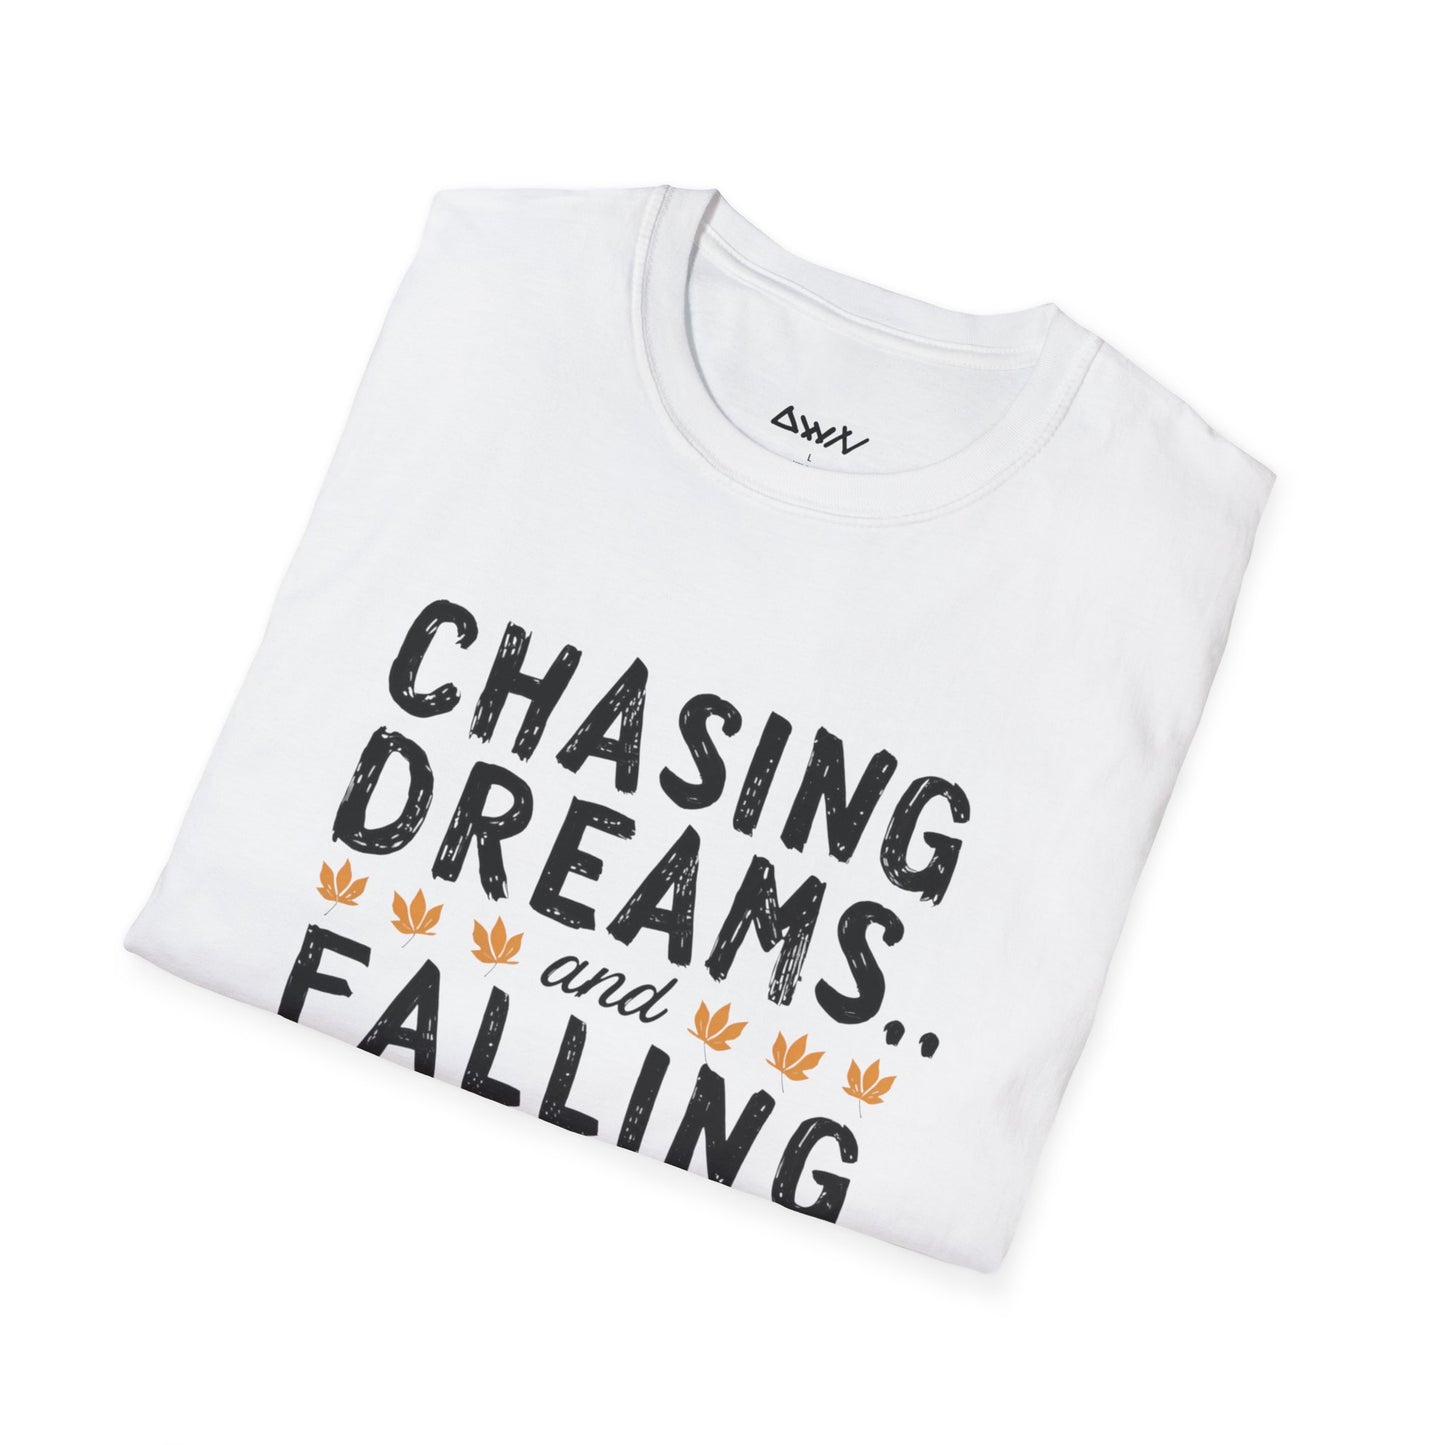 Falling Leaves T-Shirt - DwnReverie